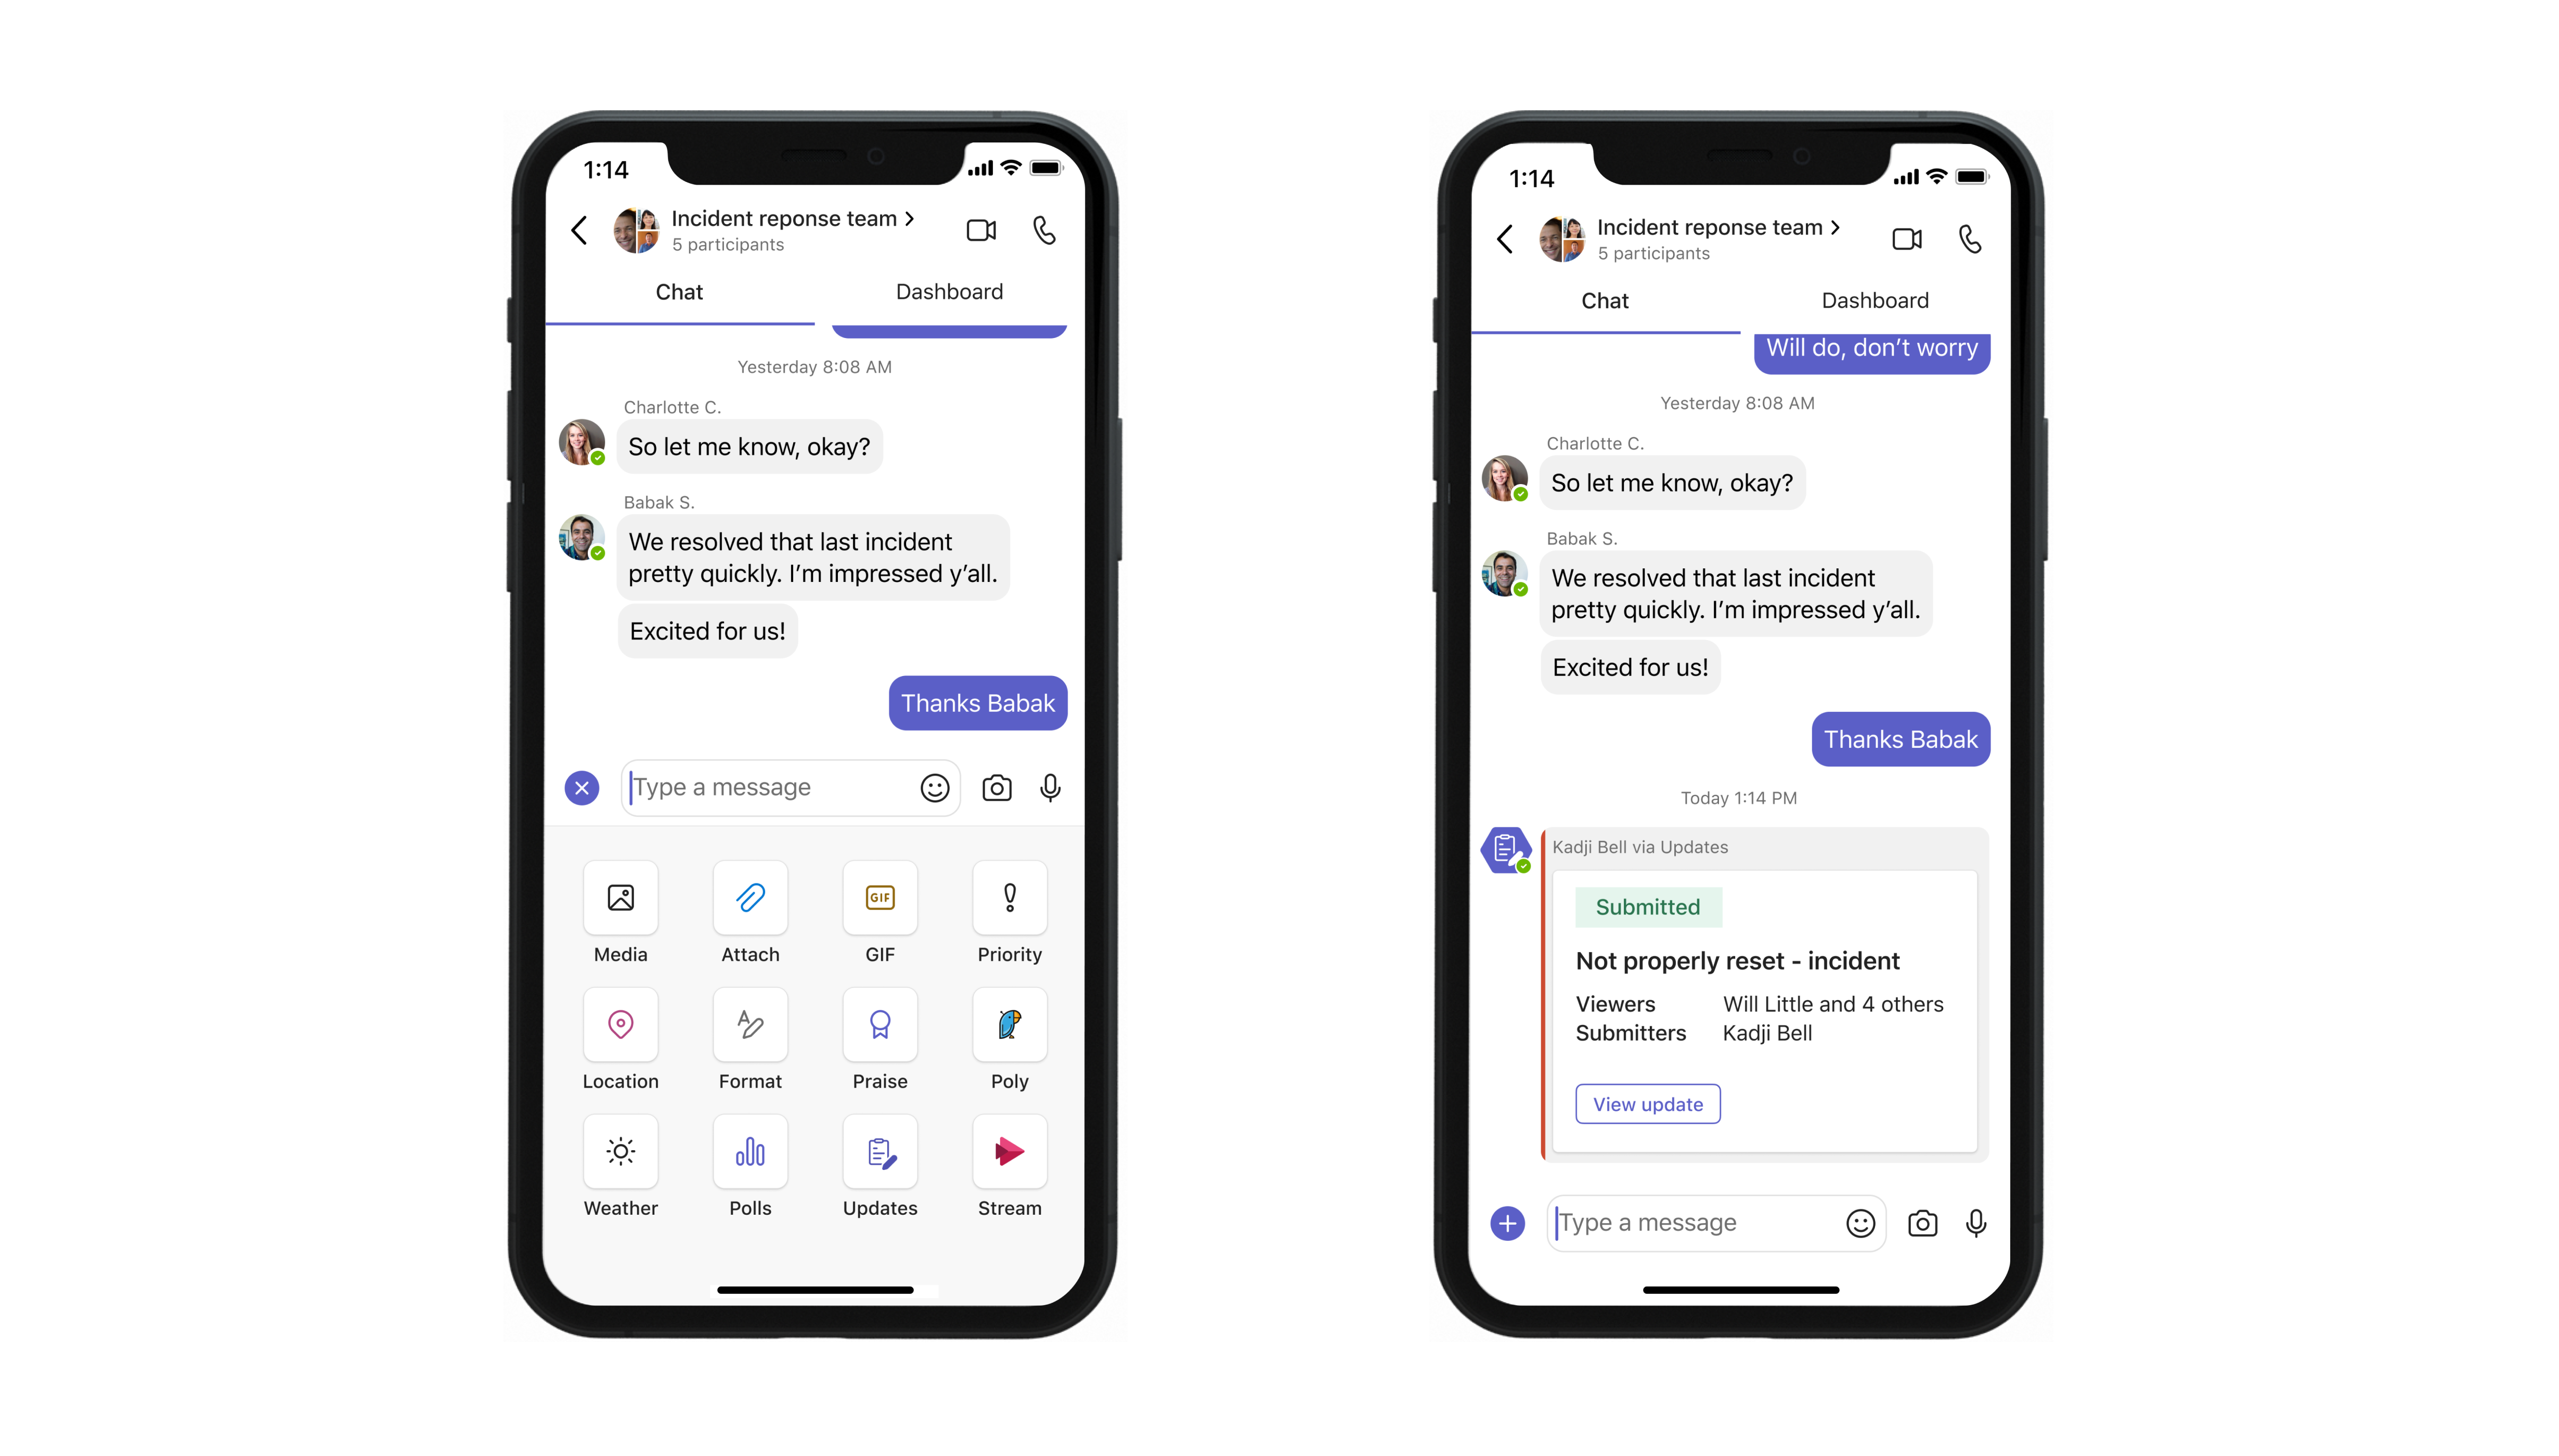 Mobil, der viser meddelelsesudvidelse i Opdateringer-app i Microsoft Teams